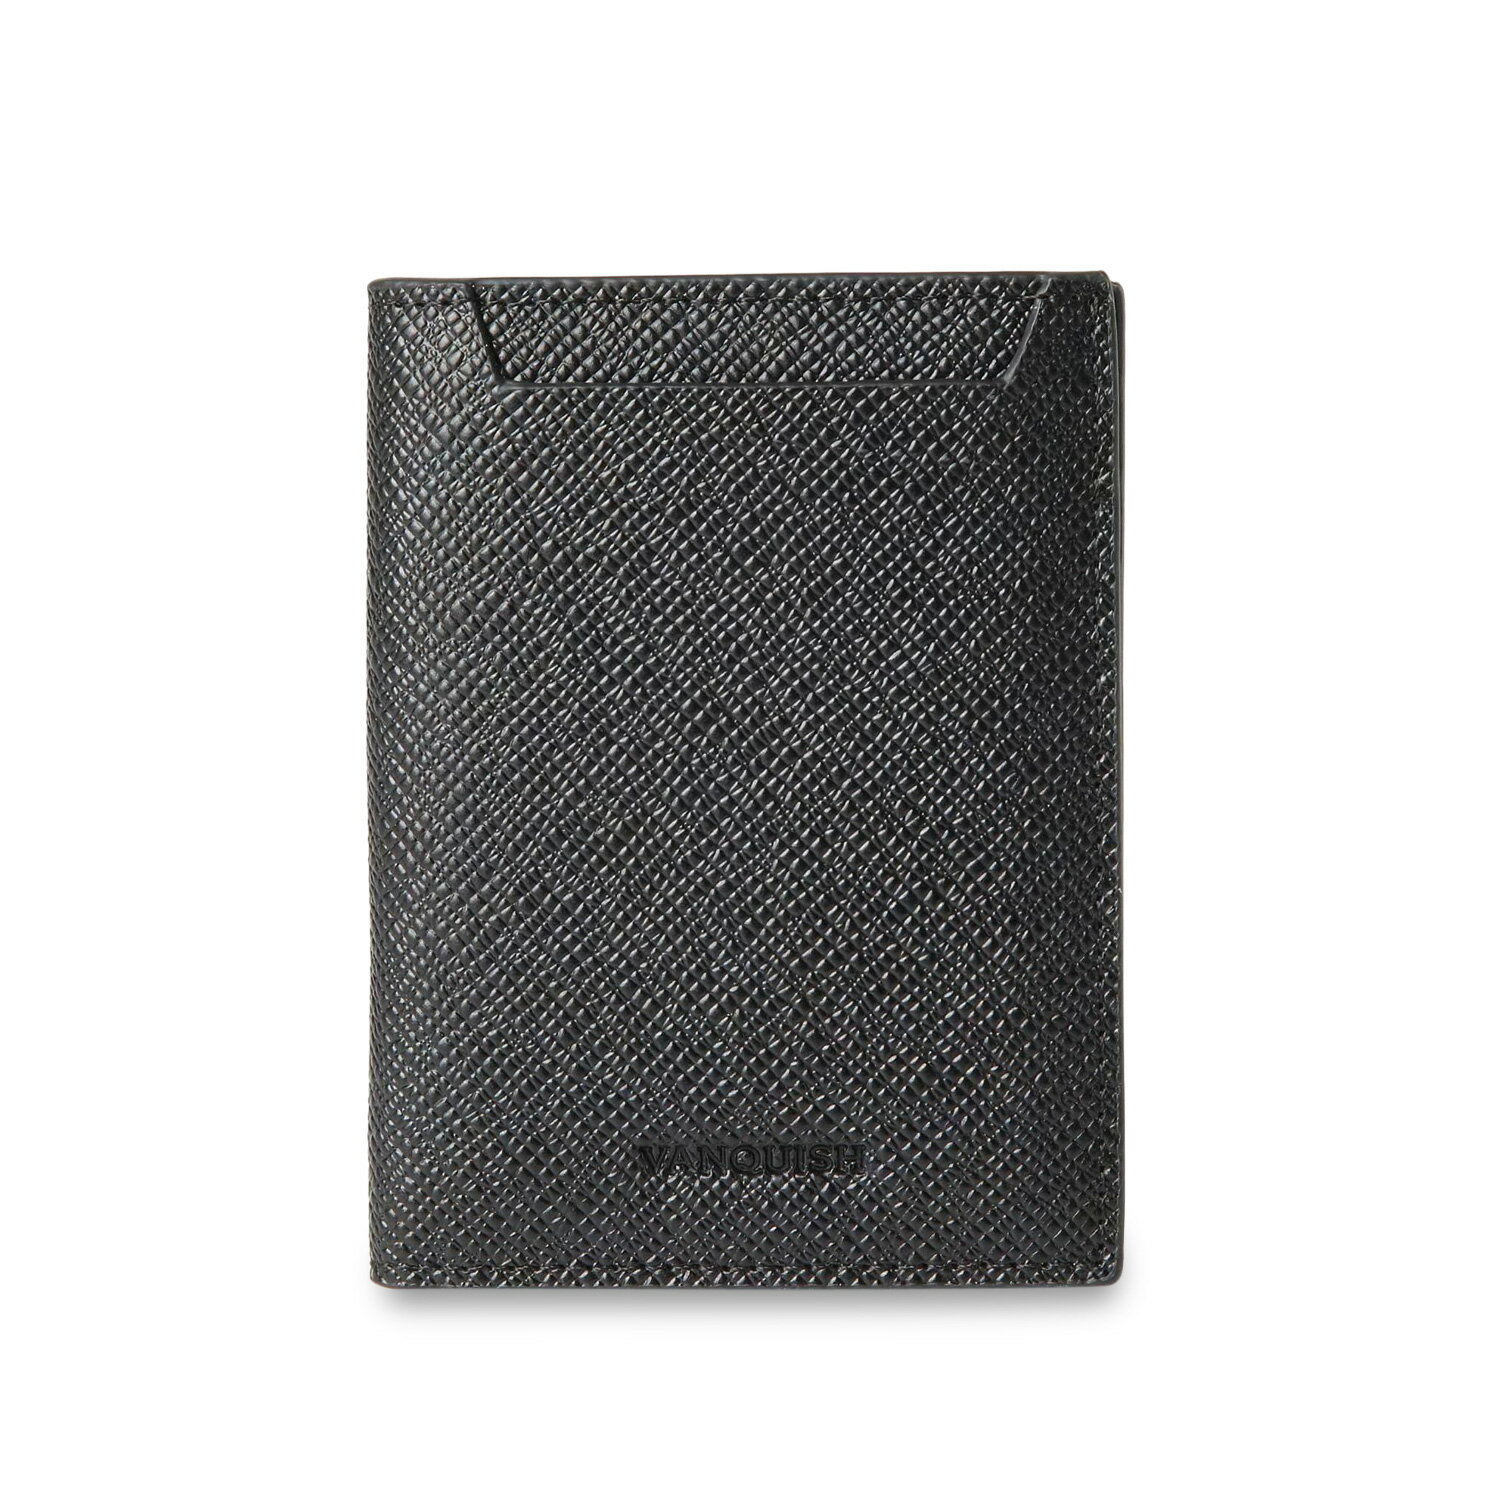 VANQUISH WALLET ヴァンキッシュ 二つ折り財布 メンズ 本革 ブラック ネイビー ダーク グリーン 黒 VQM-43290